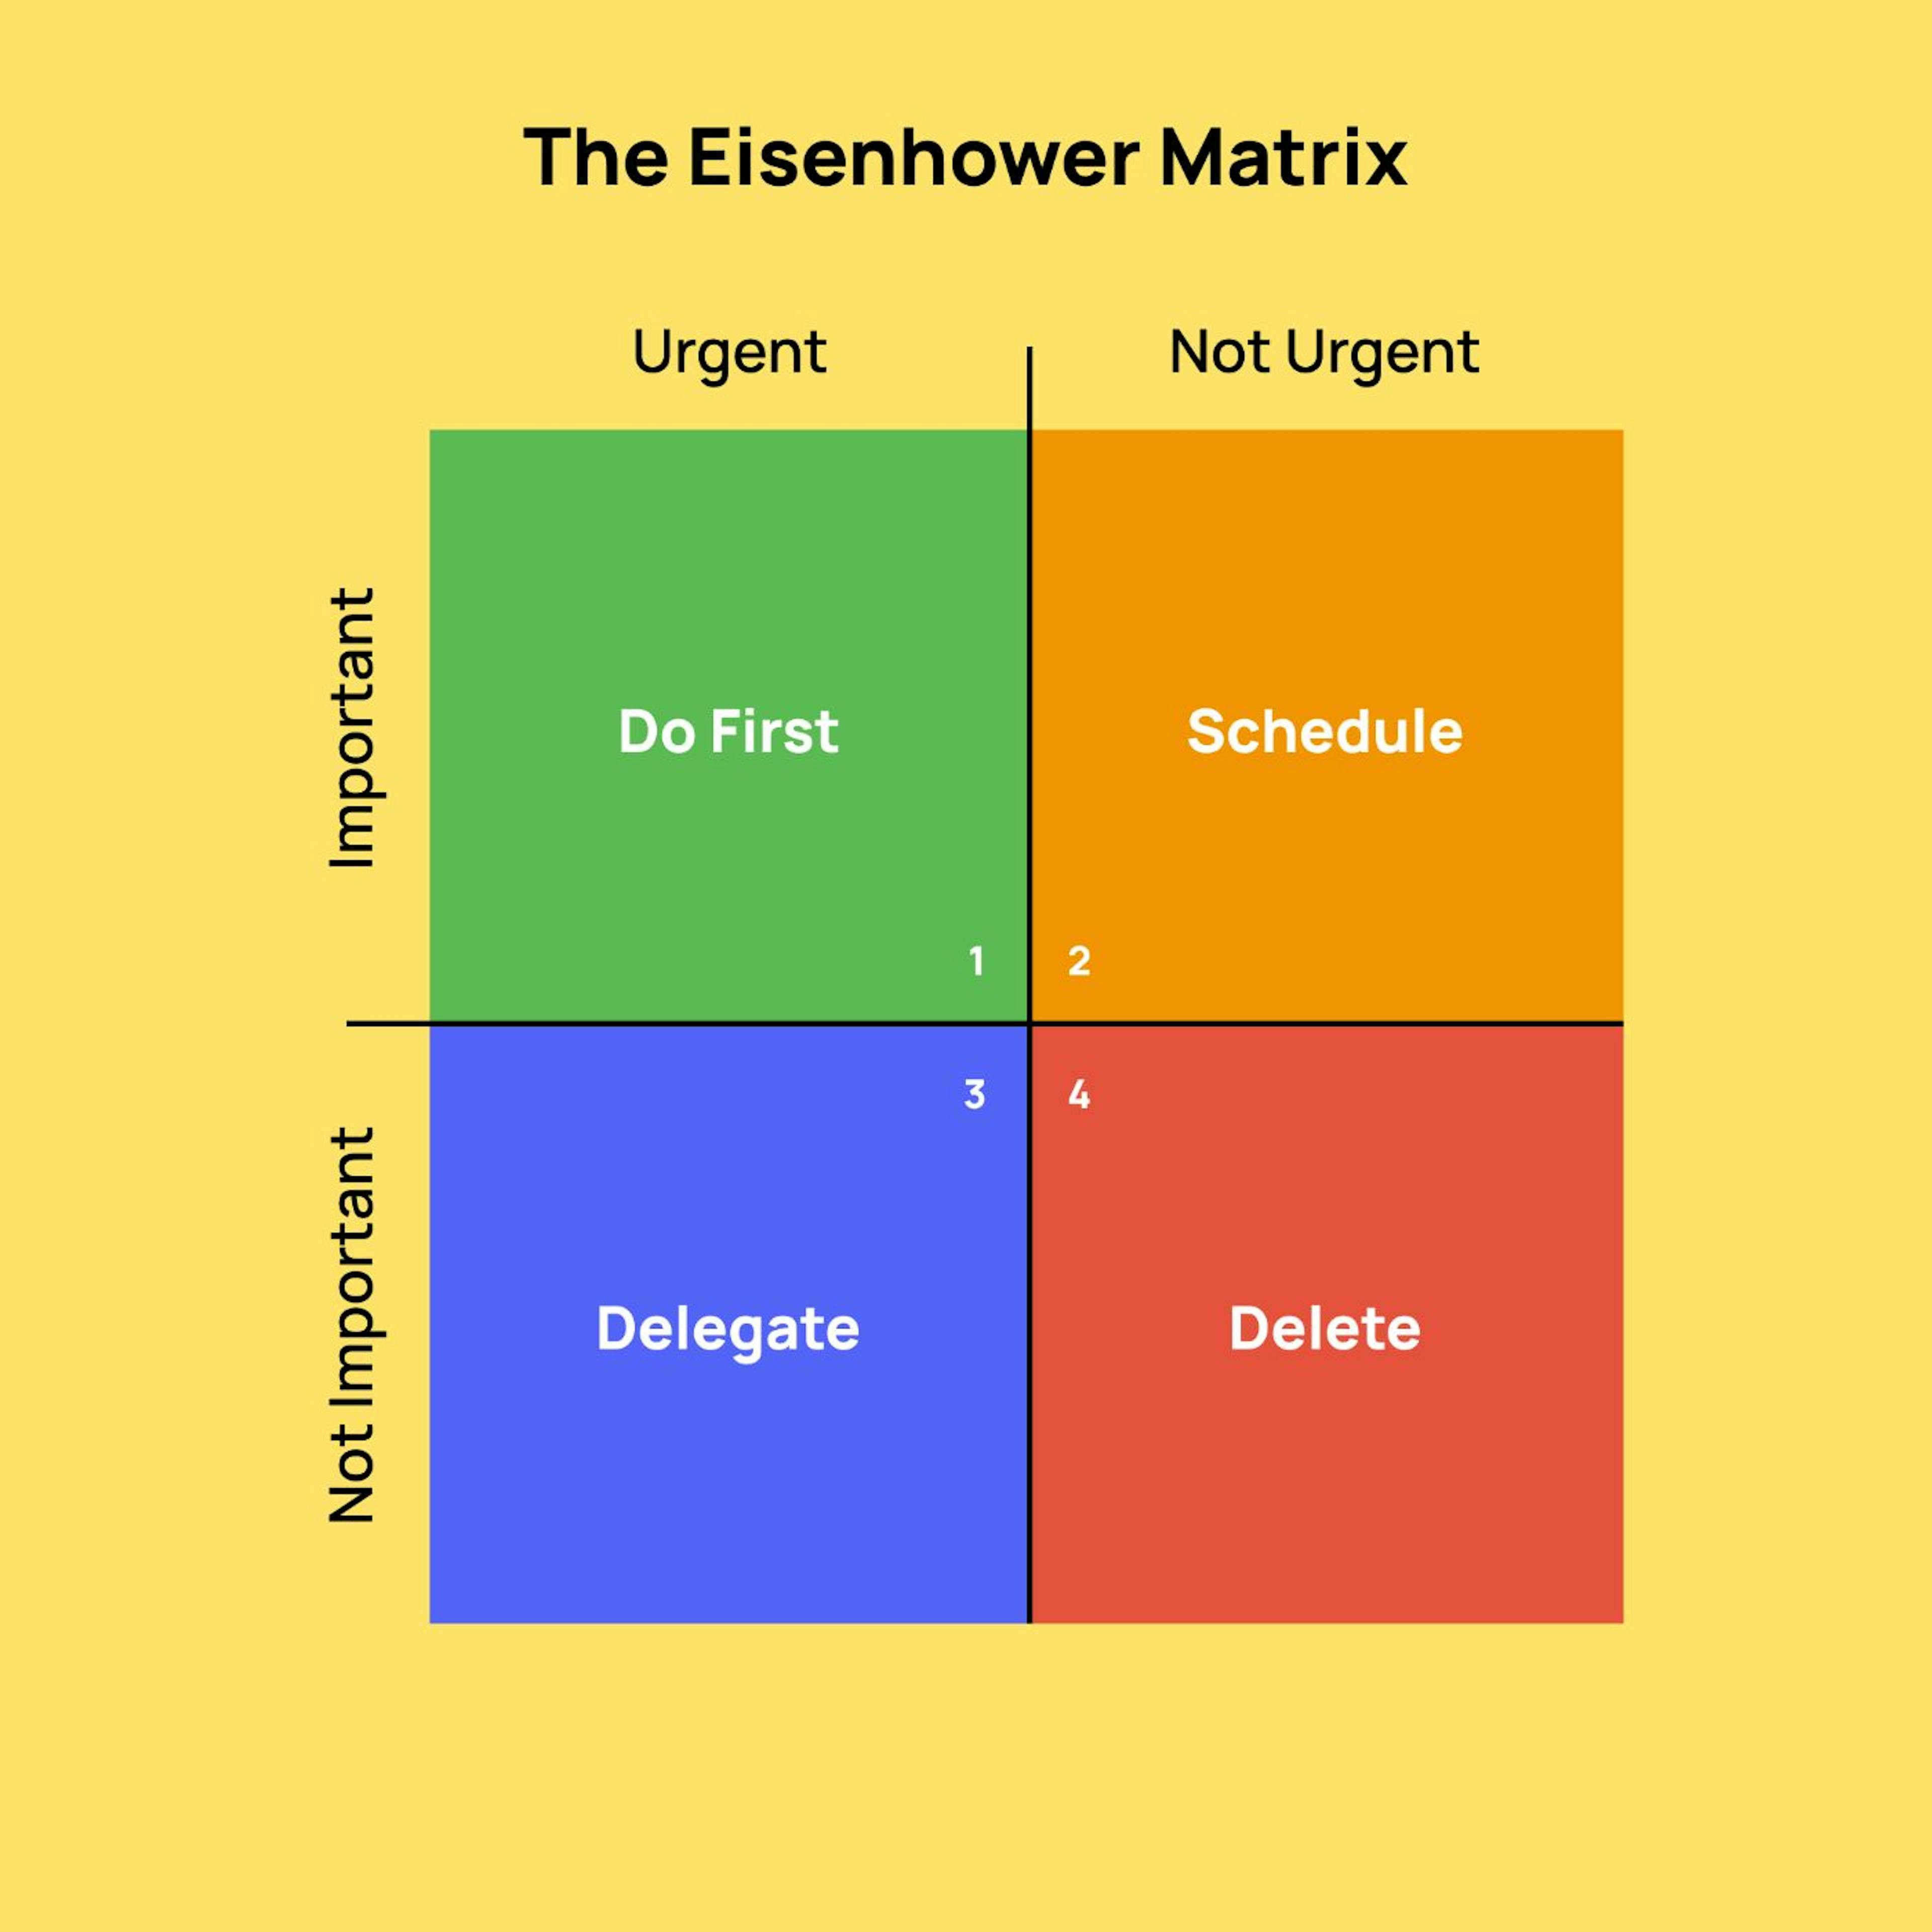 A Matriz de Eisenhower